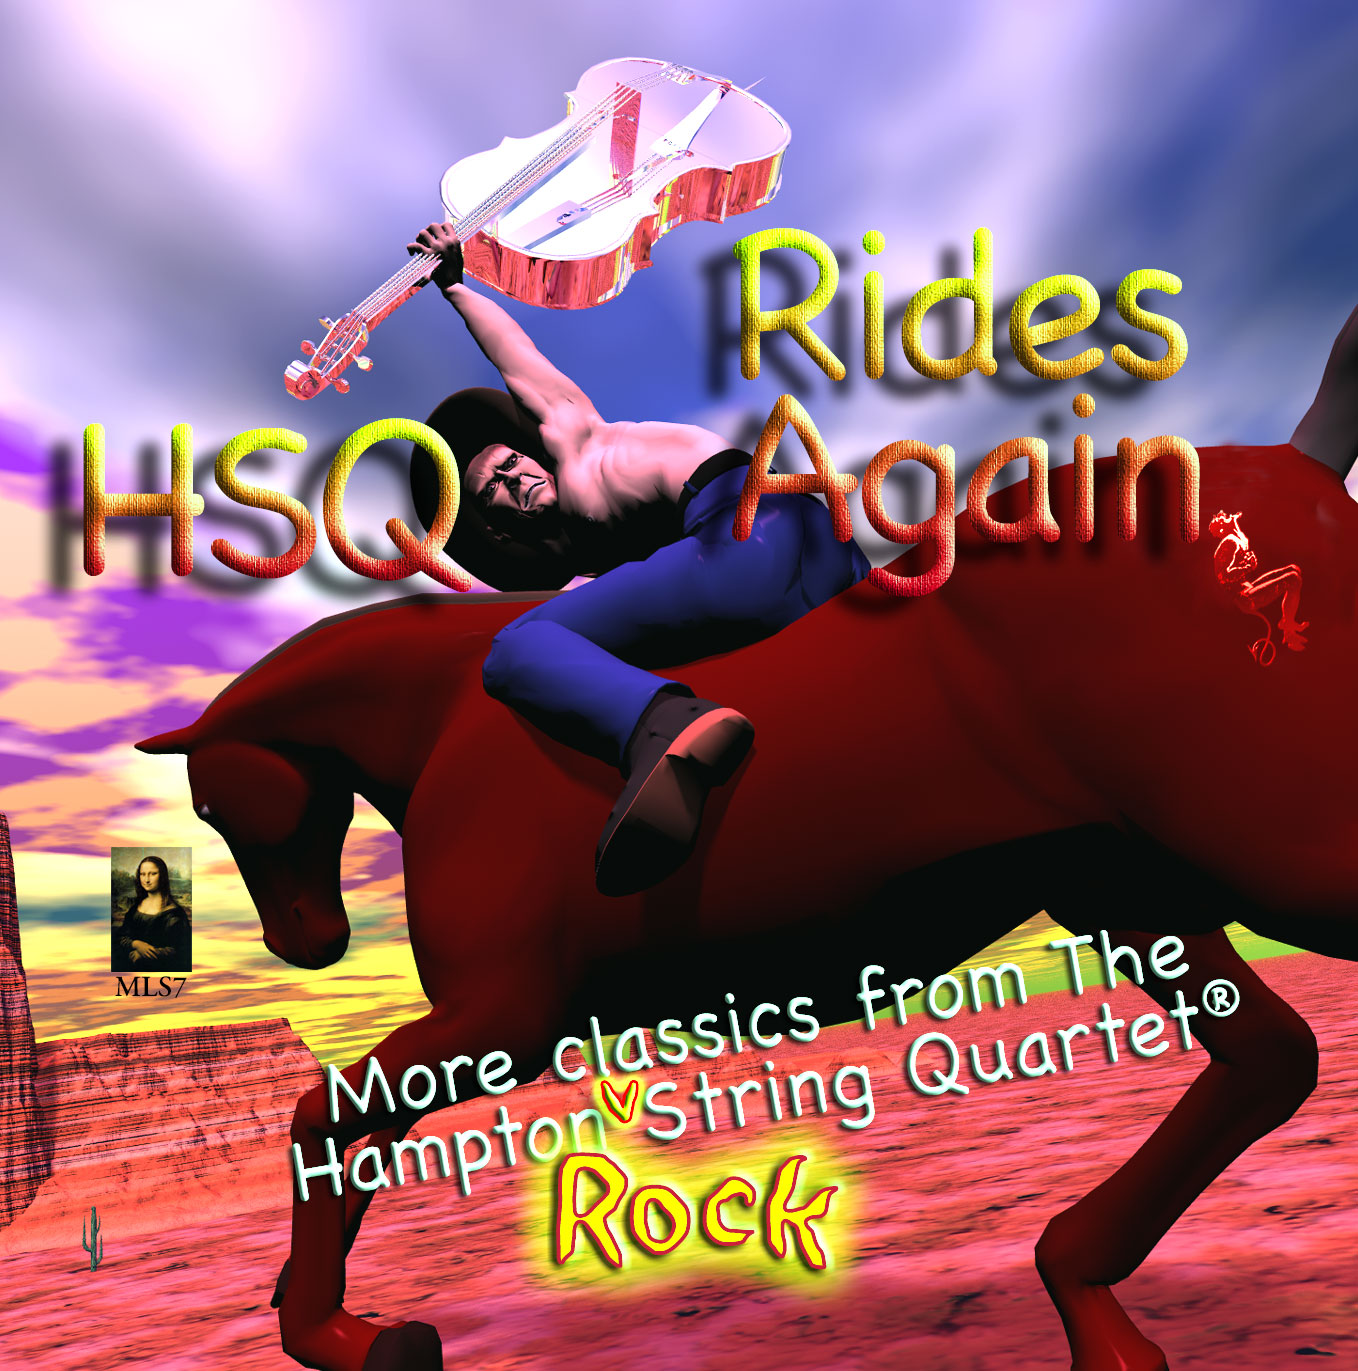 HSQ Rides Again